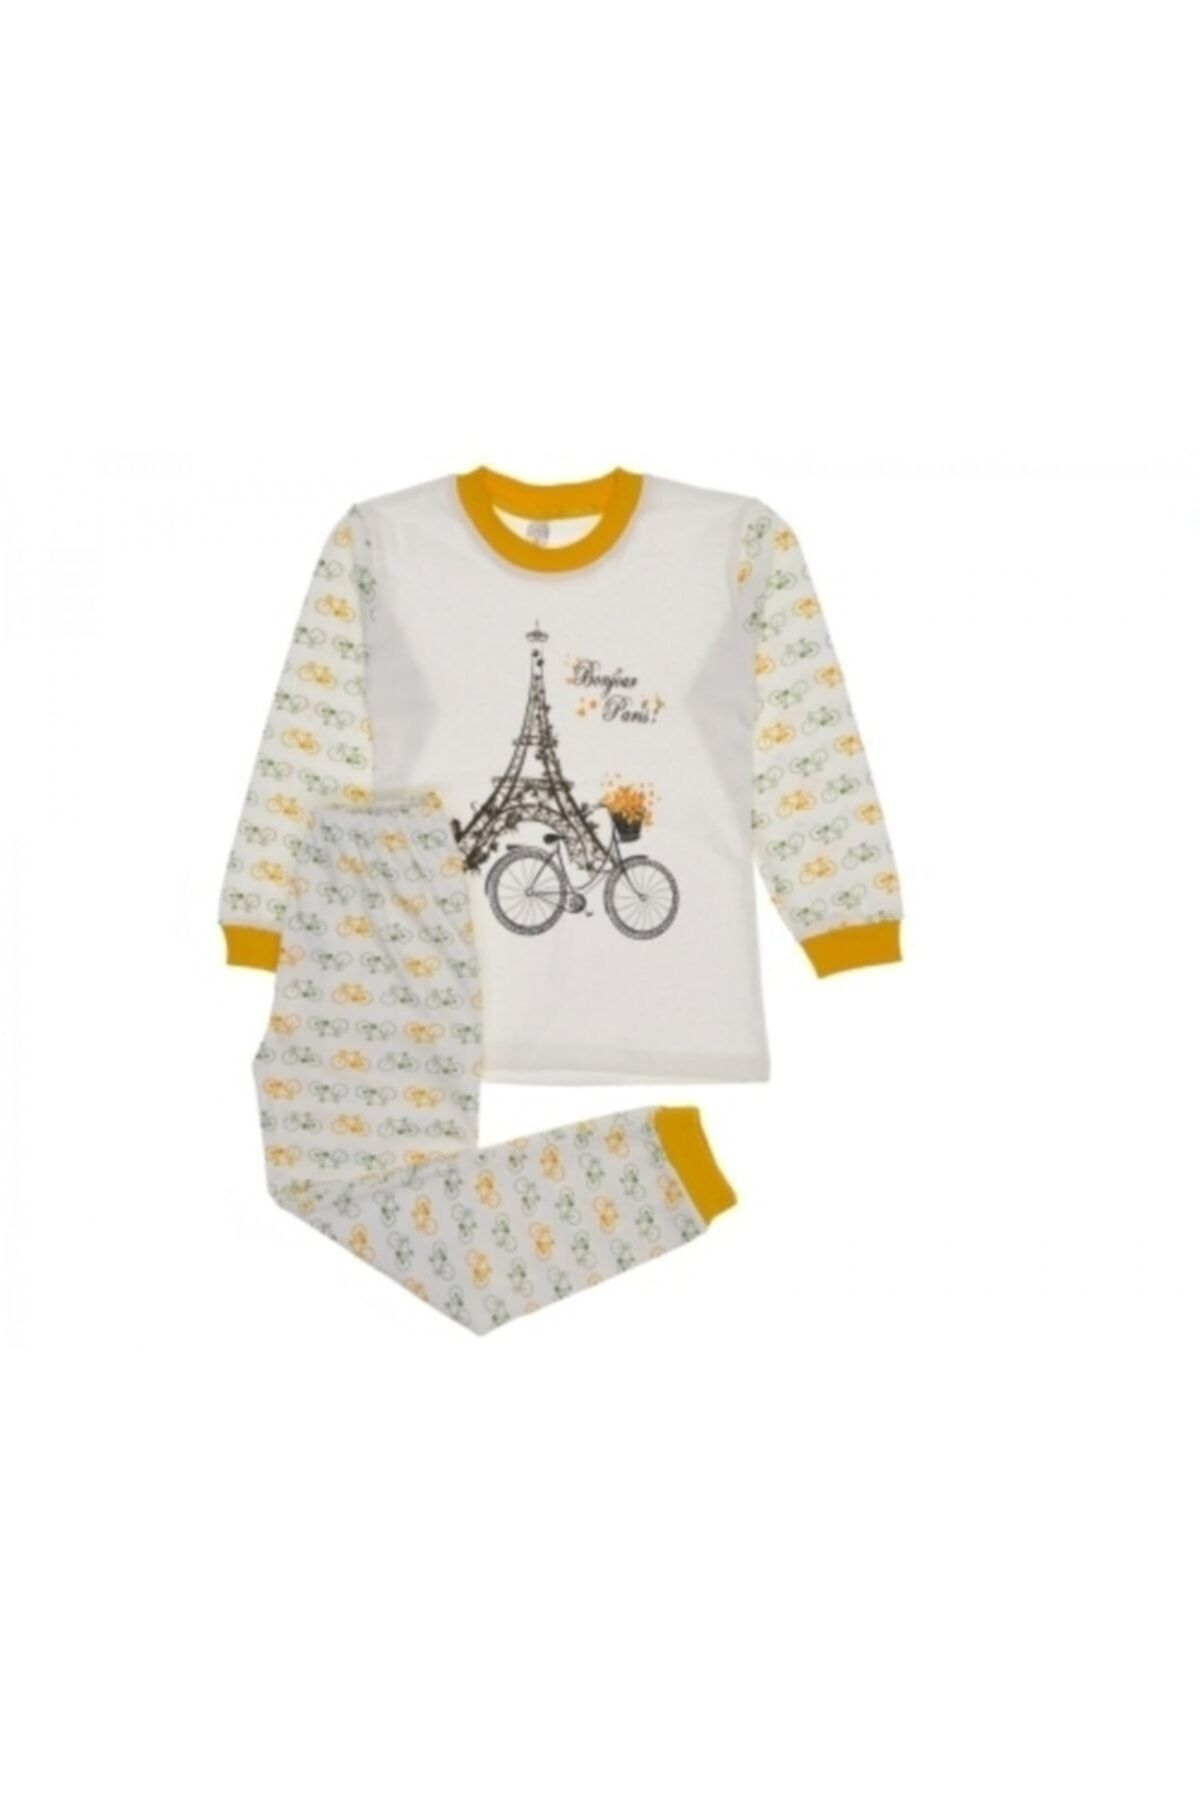 Murat Baby Eyfel Kulesi Baskılı Kız Pijama Takımı Sarı 6-7 Yaş